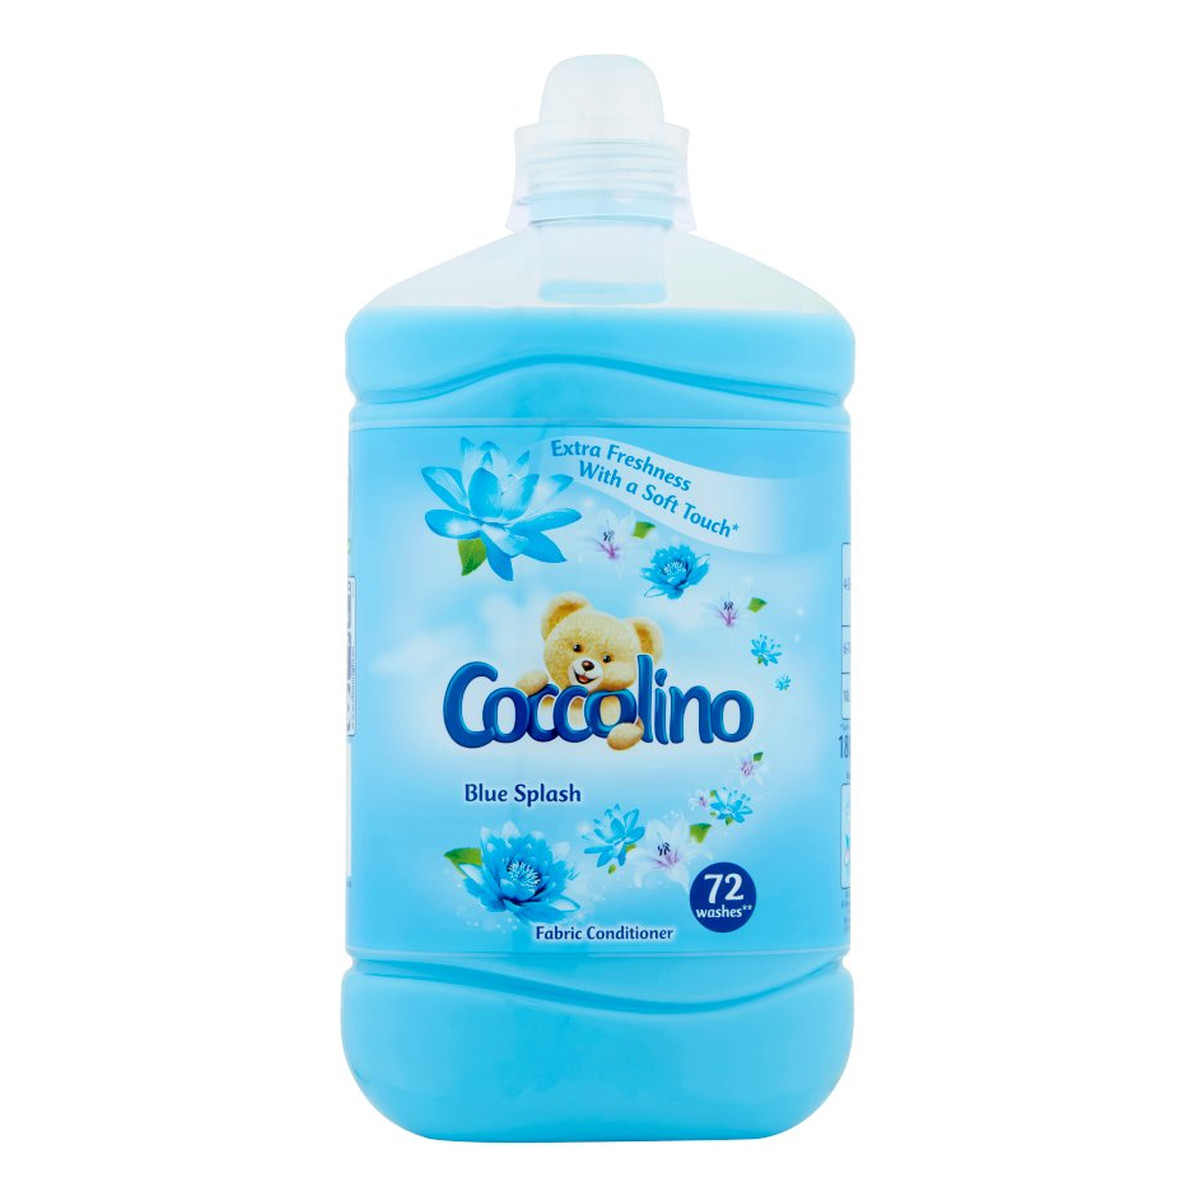 Coccolino Blue Splash Płyn do płukania tkanin koncentrat (72 prania) 1800ml